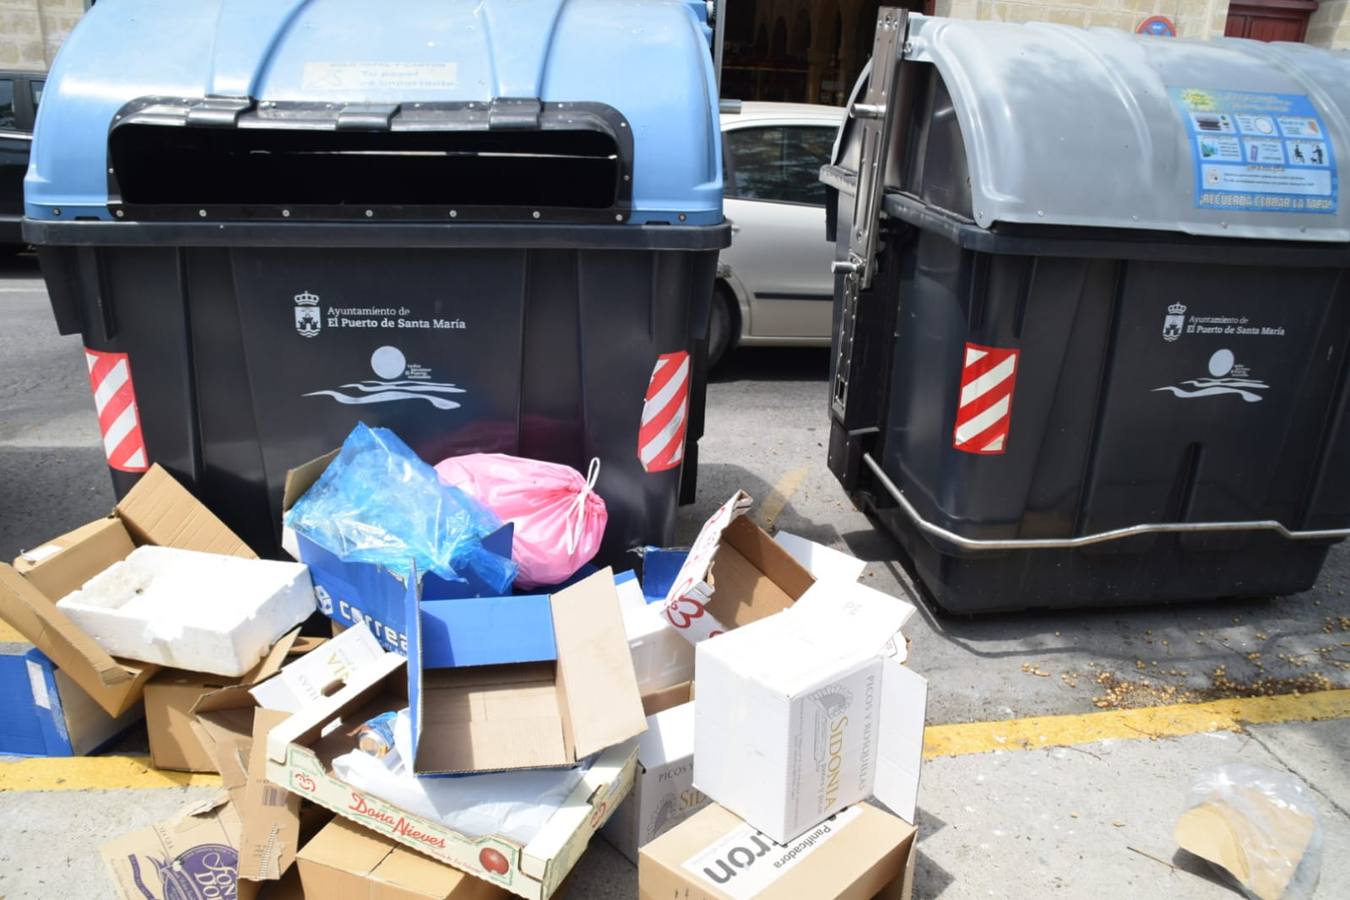 La acumulación de basura obliga a las partes a buscar una solución en El Puerto